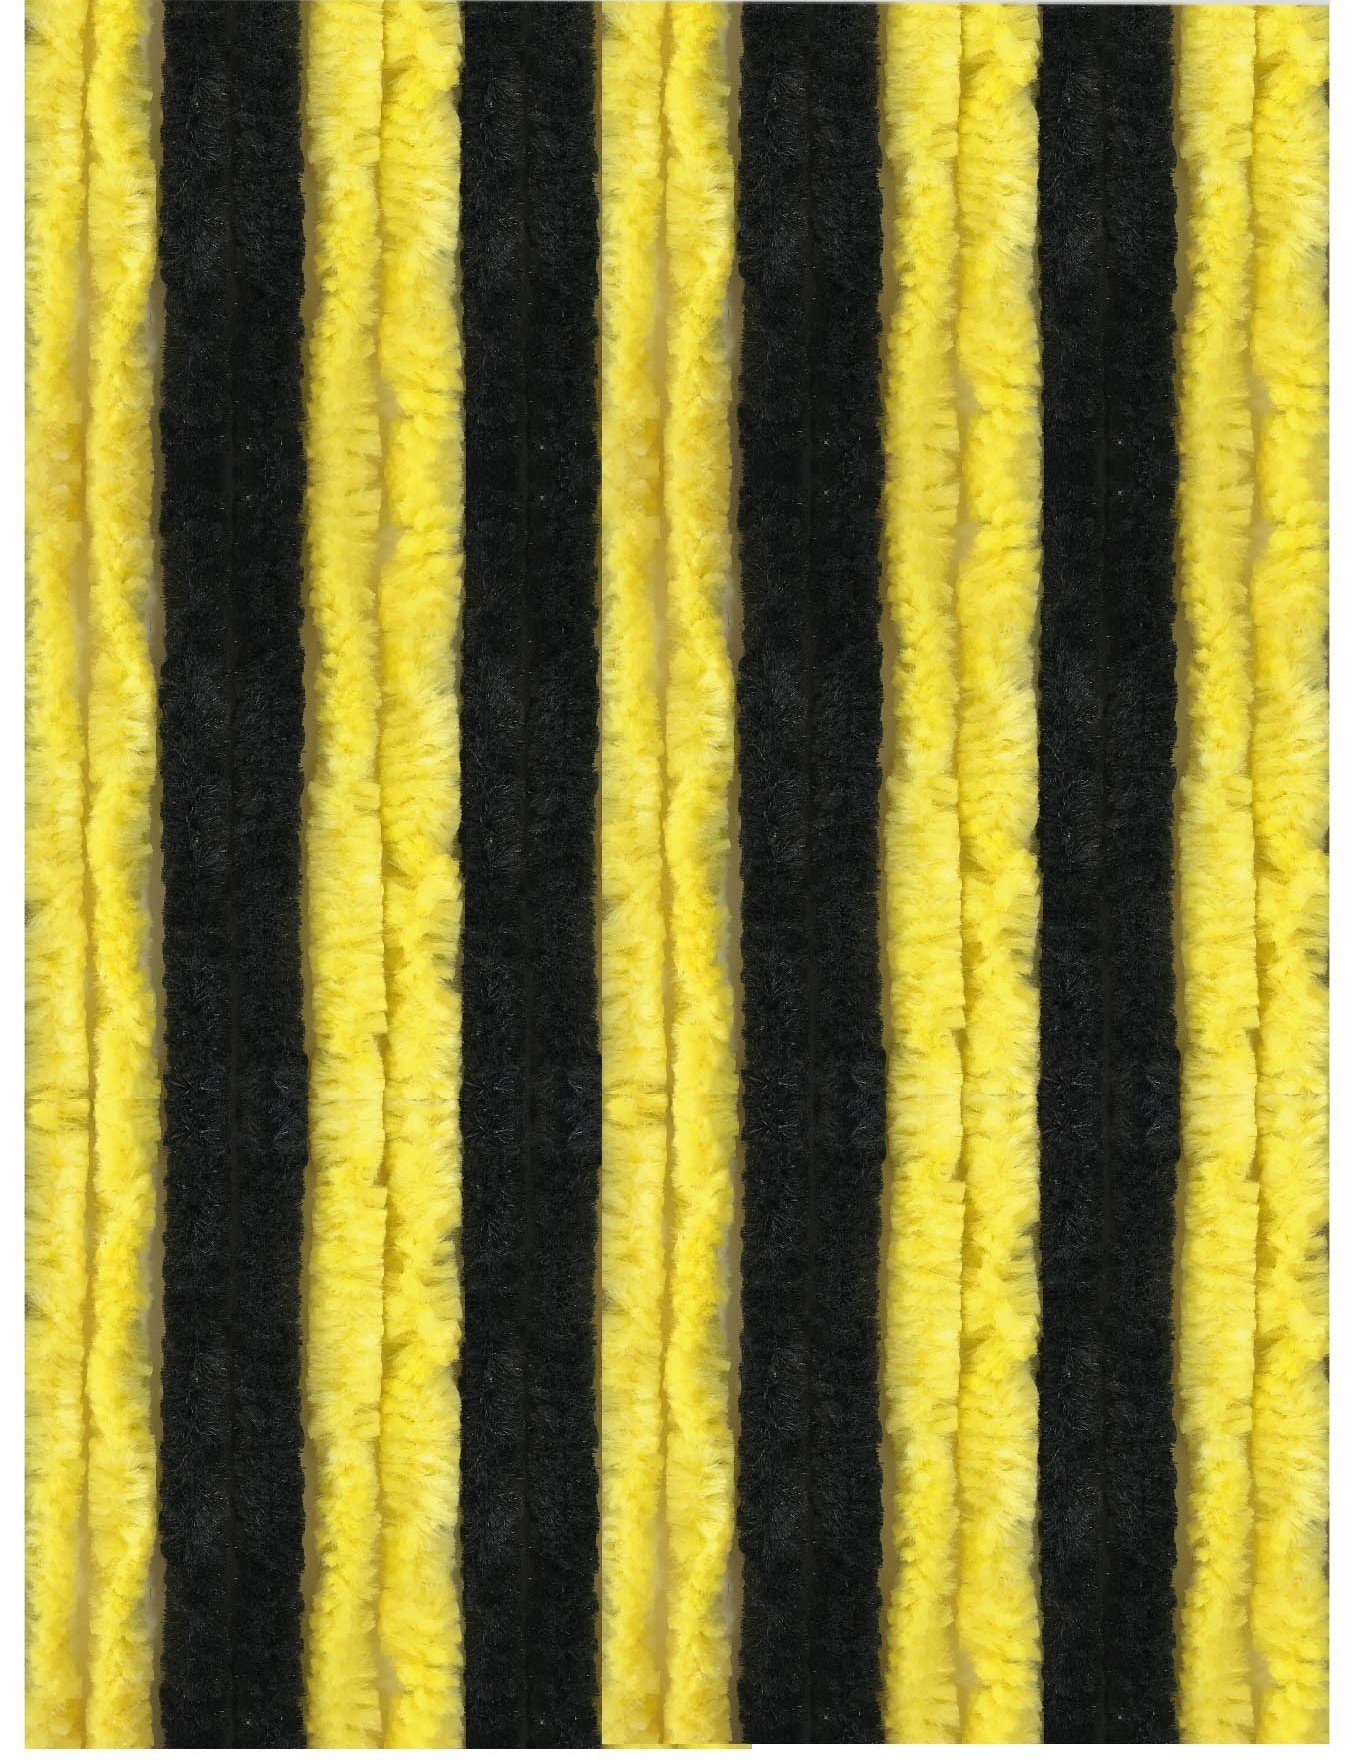 Türvorhang Flausch, Arsvita, Ösen (1 St), blickdicht, Flauschvorhang 100x200cm (BxL), perfekter Insekten- und Sichtschutz, viele versch. Farben verfügbar Schwarz - Gelb